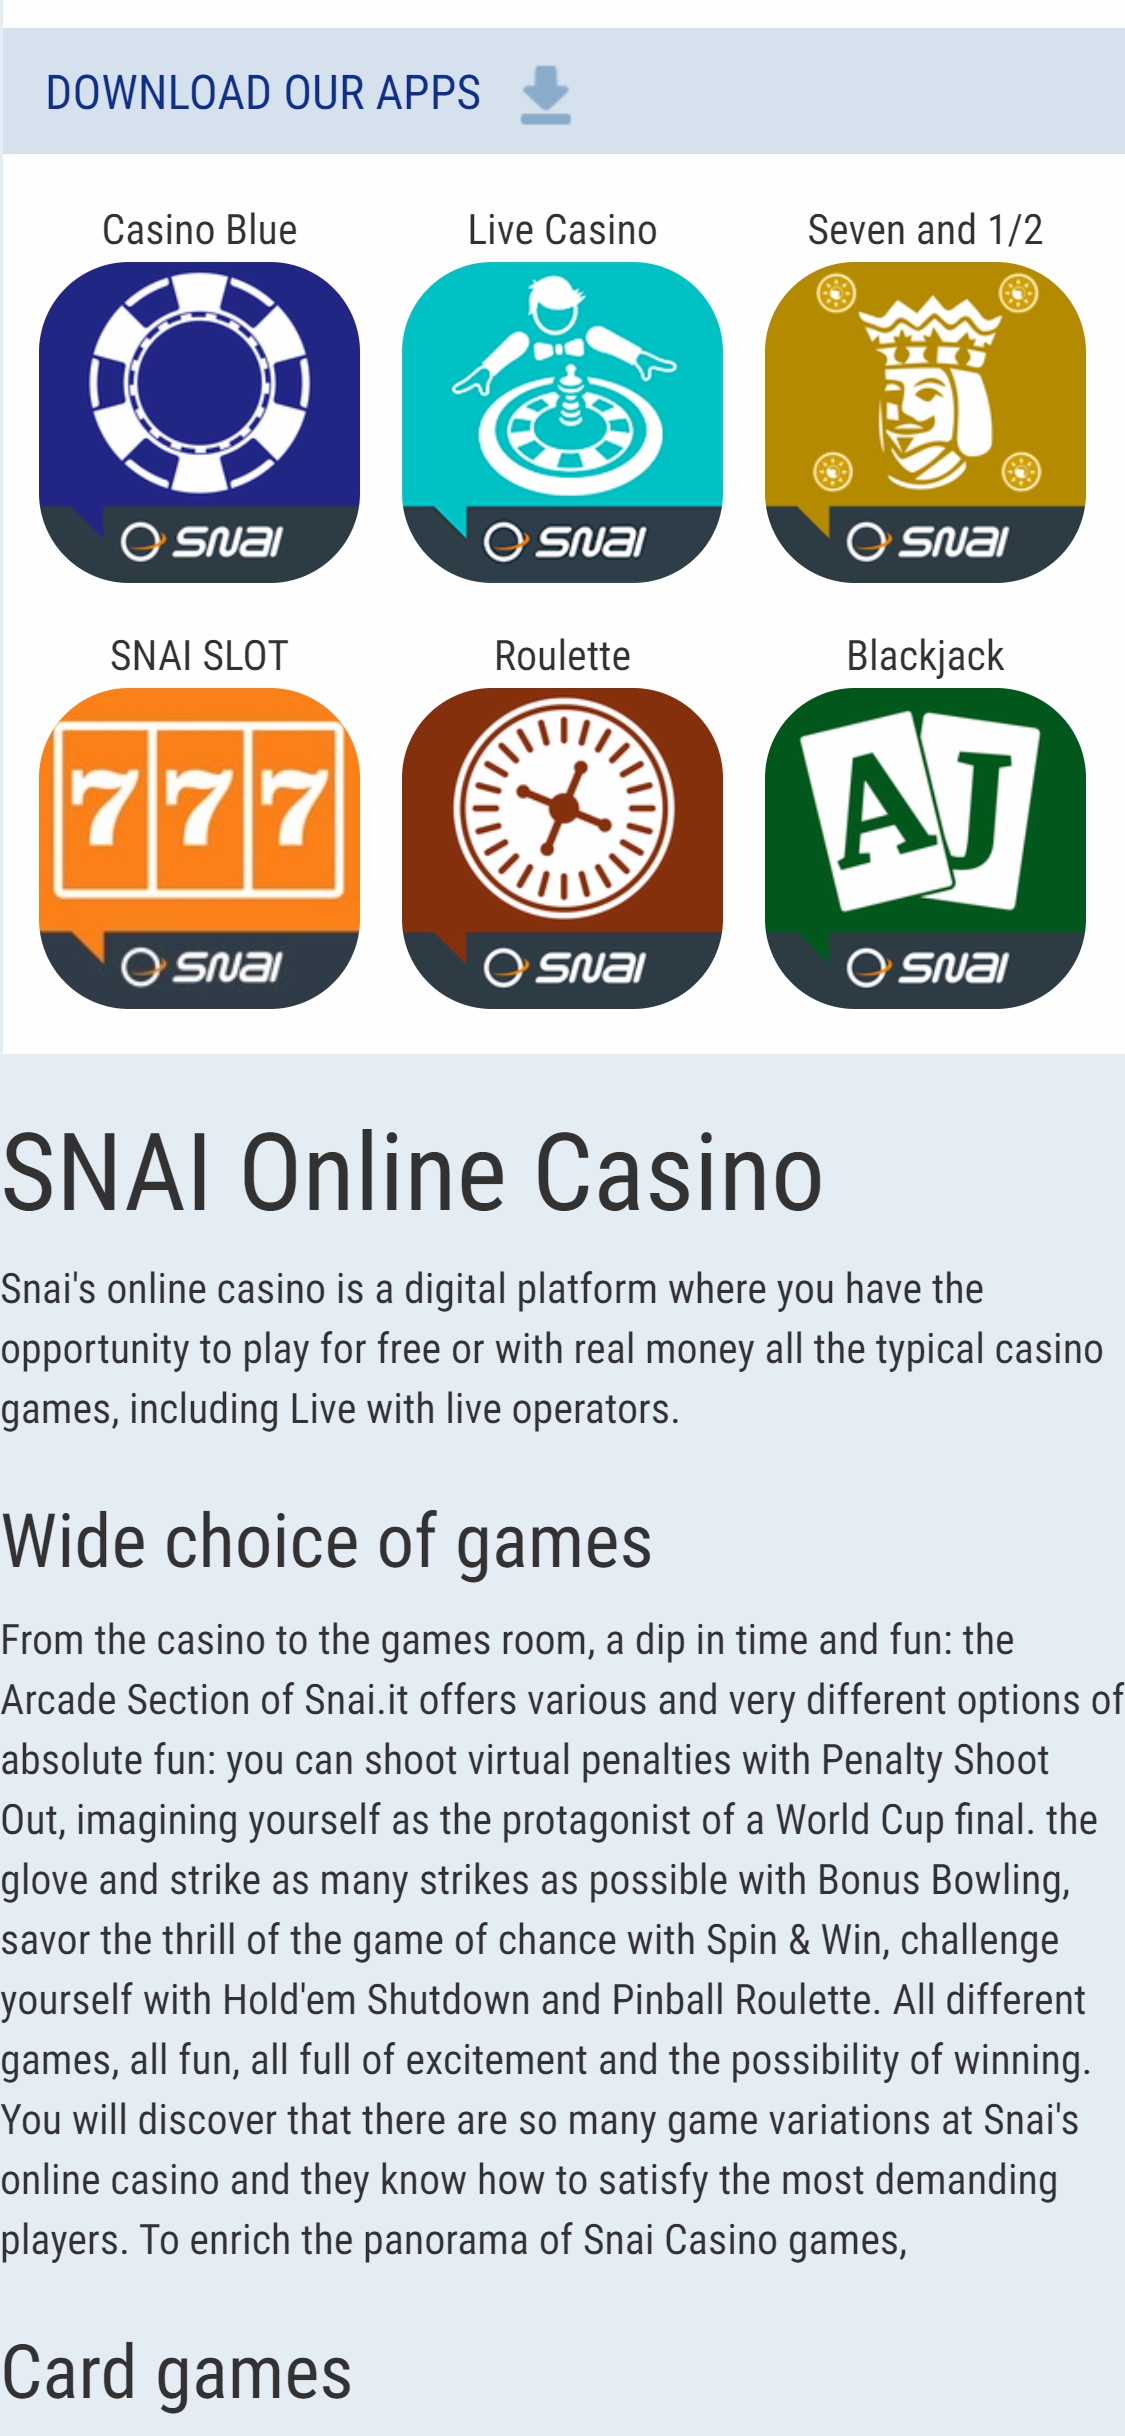 Snai Casino Mobile App Review